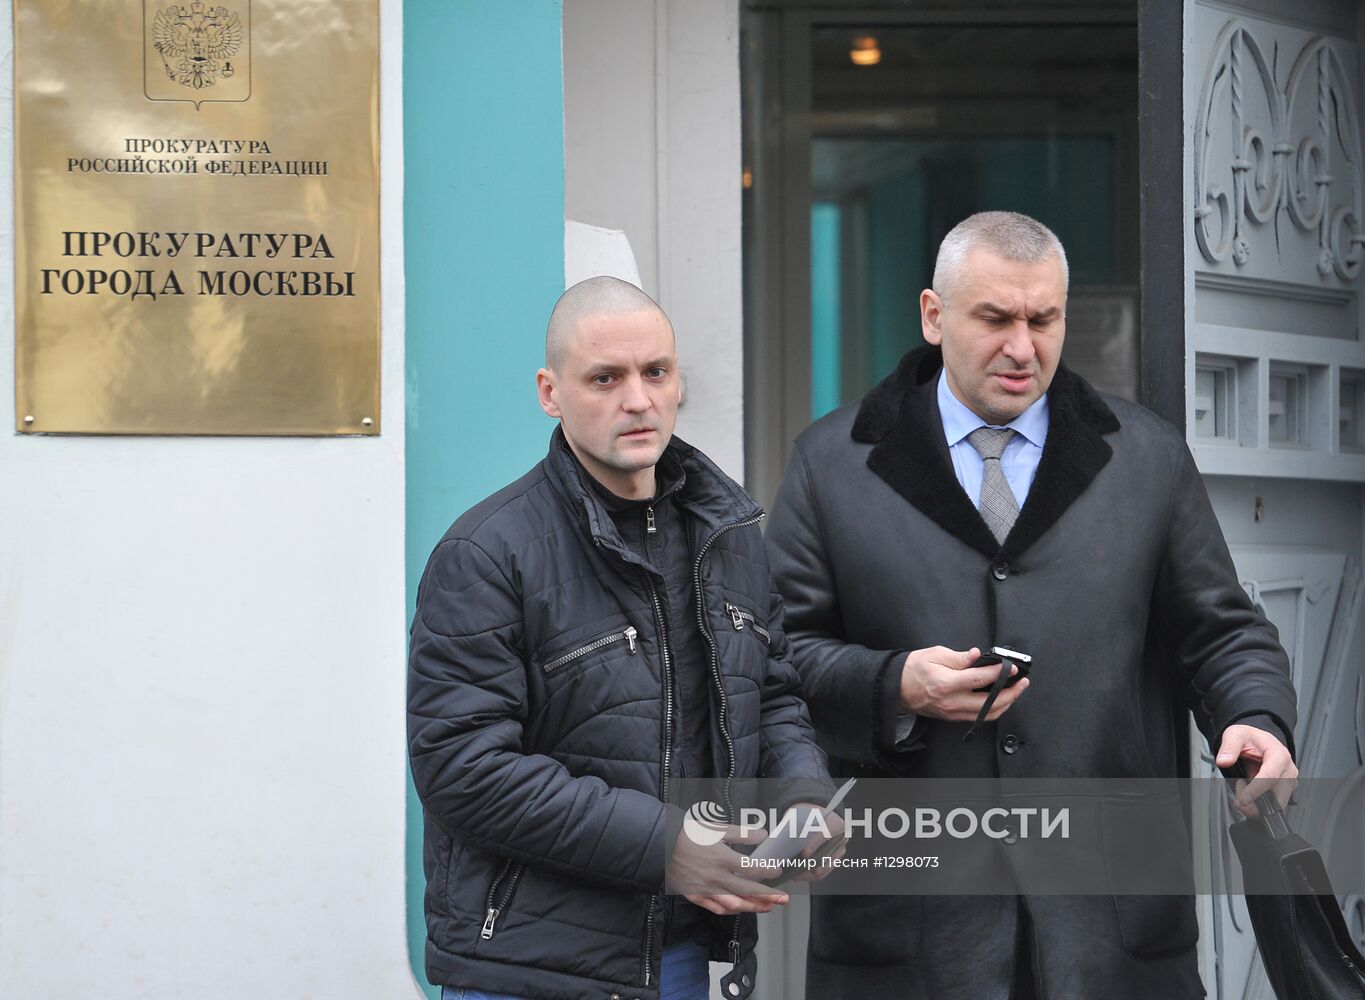 Сергей Удальцов вызван в прокуратуру Москвы